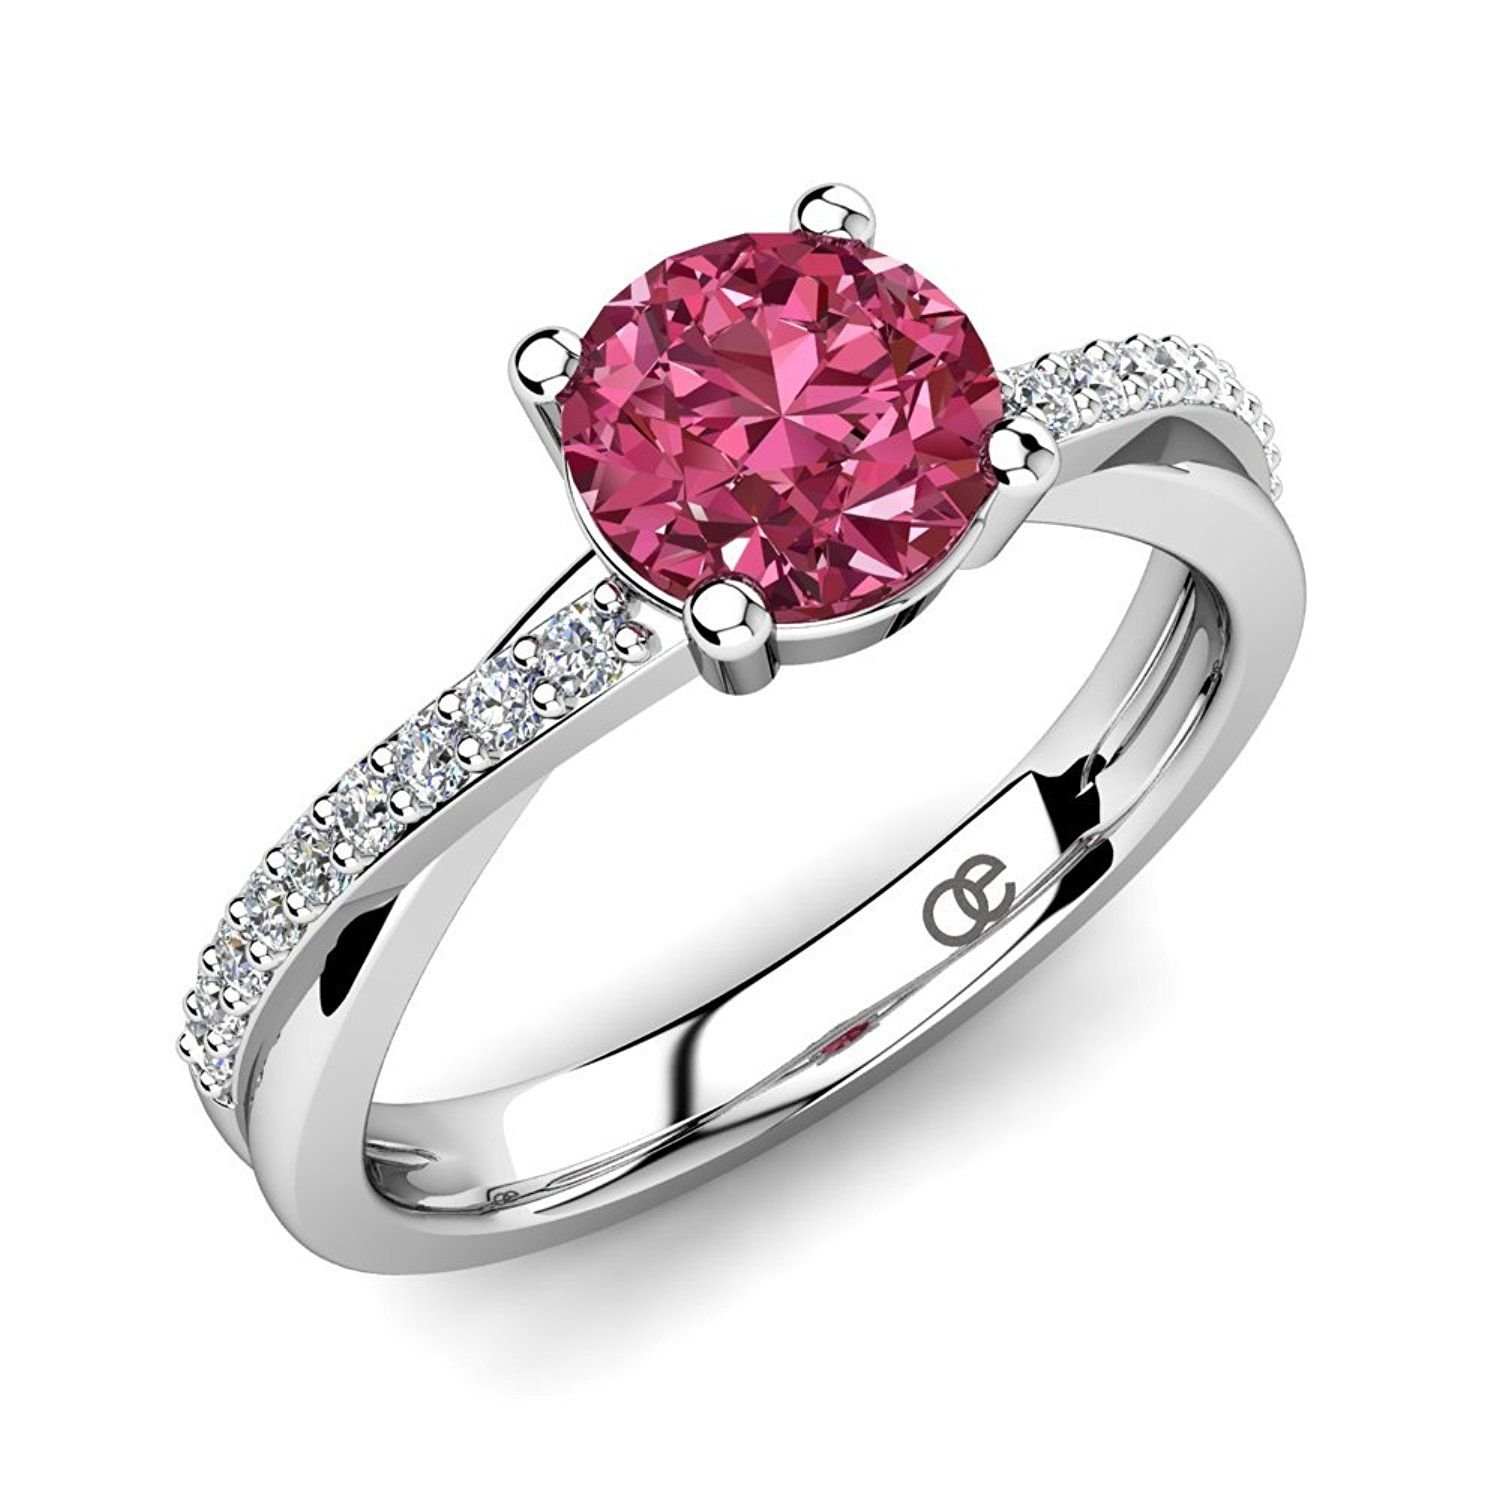 Кольцо с розовым сердцем. Кольцо с розовым сердечком. Кольцо серебро с сердцем розовое. Кольцо серебро с сердечком розовым. Сваровски кольцо с сердцем розовым.